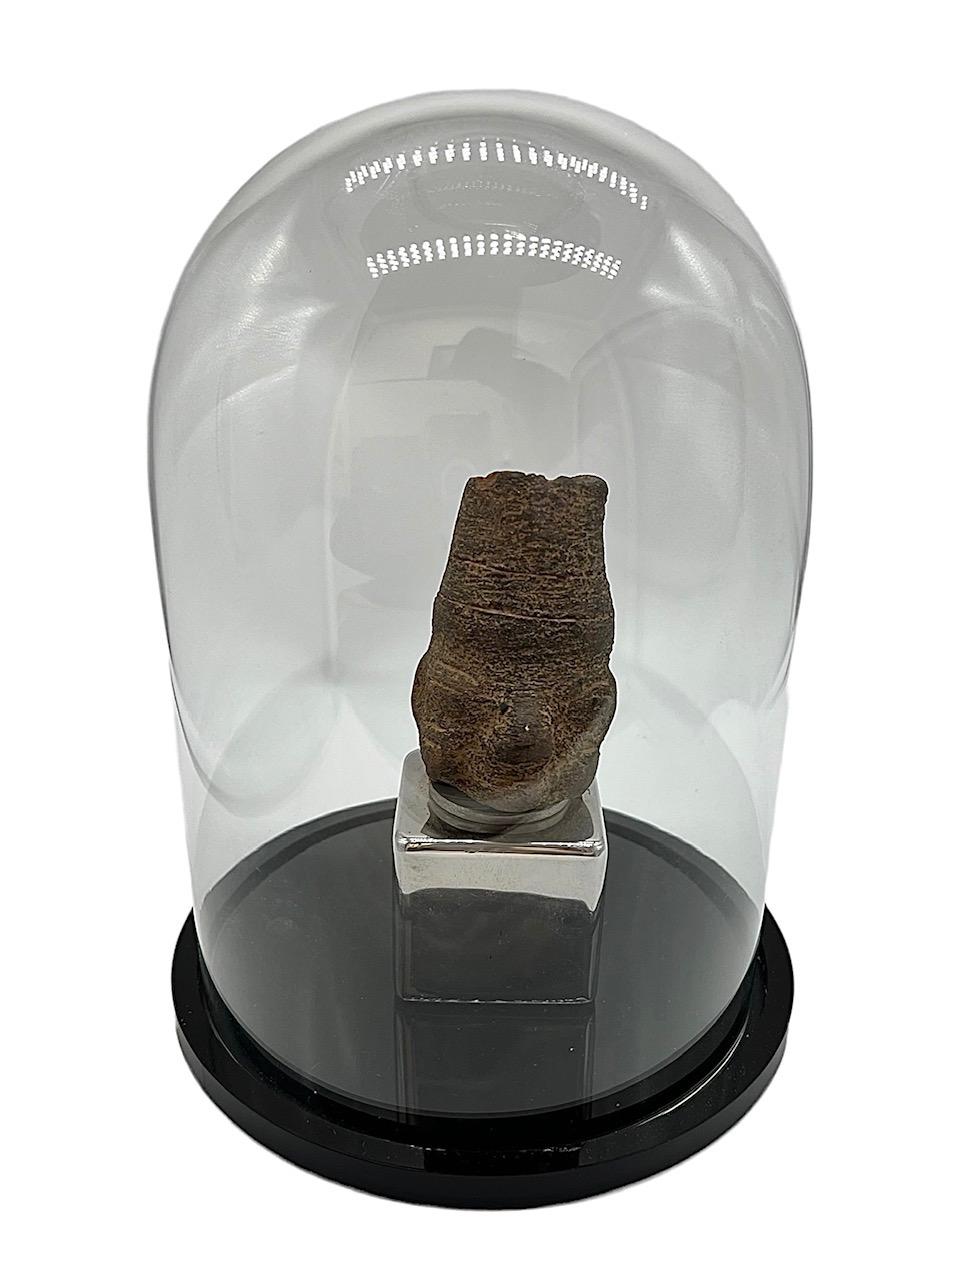 Primitive Kopffigur aus der präkolumbianischen Zeit aus Stein und auf einem speziell angefertigten Chromsockel stehend. Das Stück ist in einer Glaskuppel mit schwarzem Lucite-Sockel untergebracht.

8in x 6in (Glaskuppel).